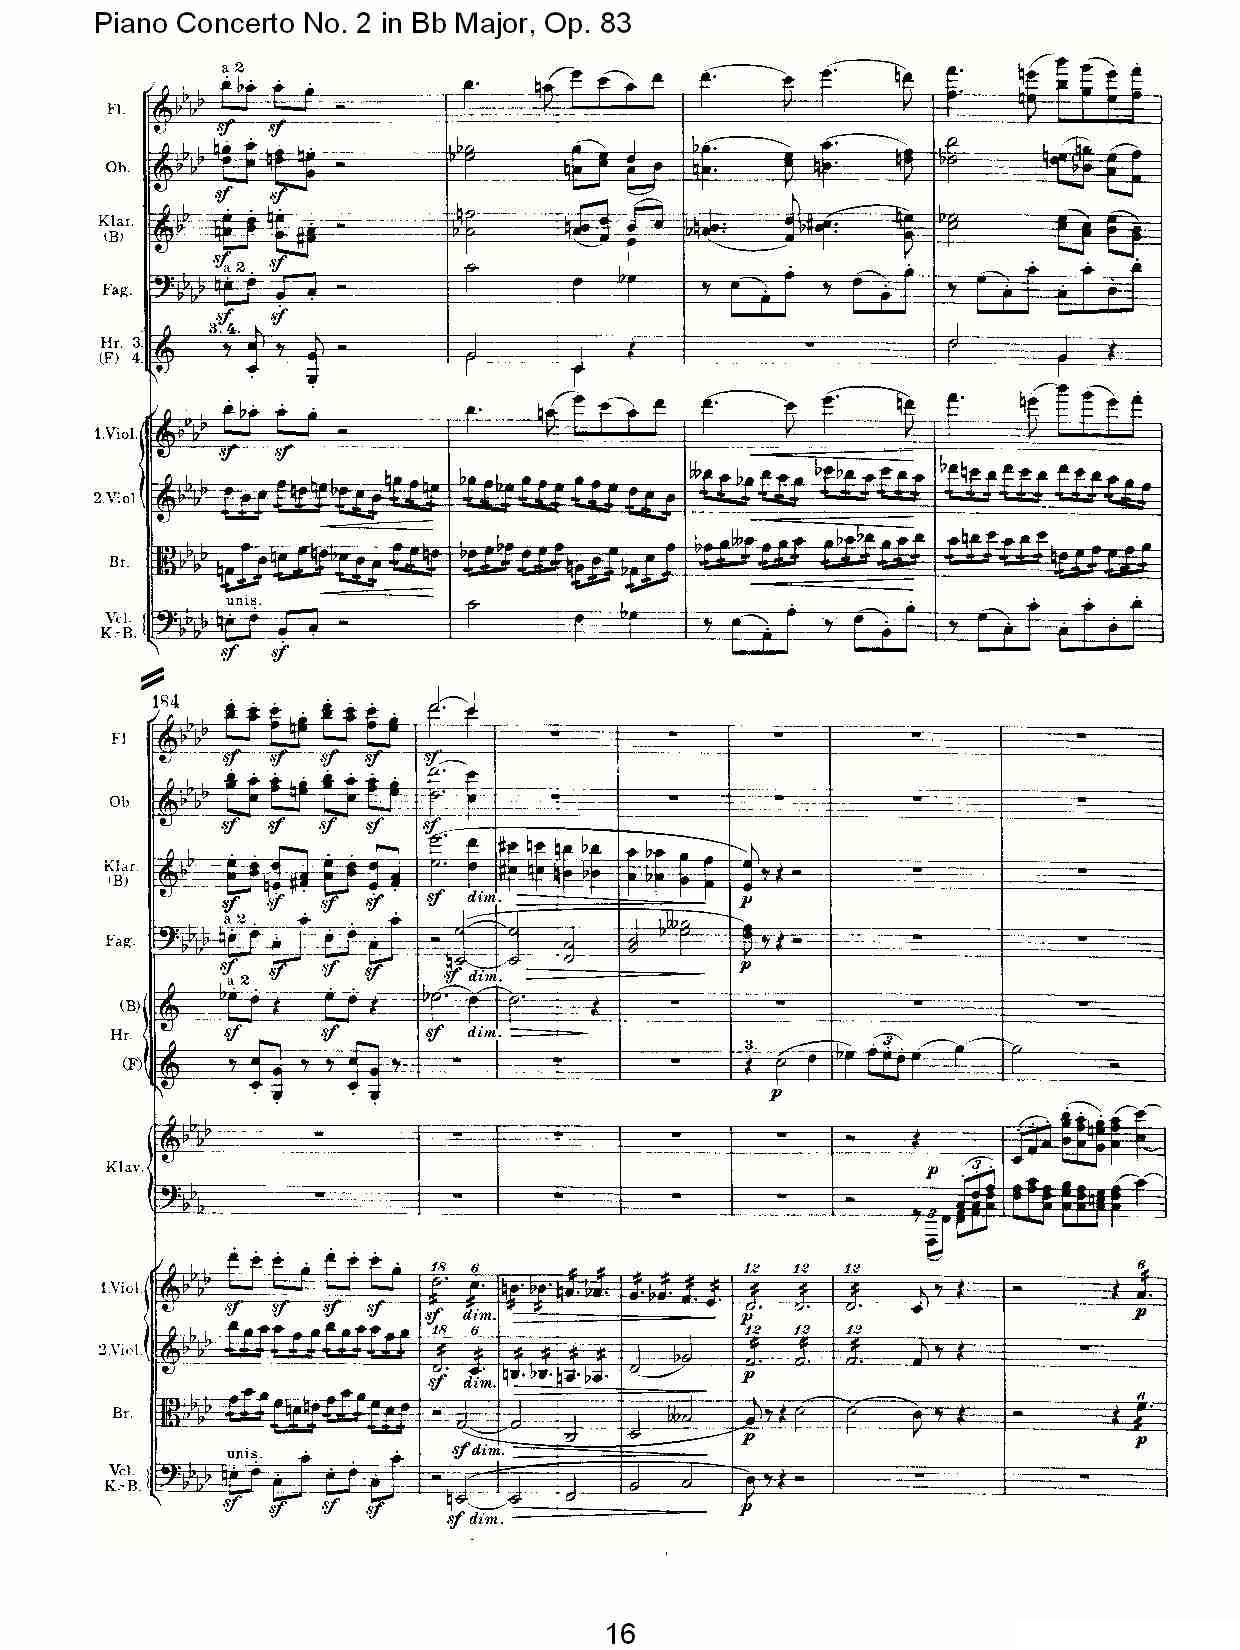 Bb大调钢琴第二协奏曲, Op.83第一乐章（一）钢琴曲谱（图17）